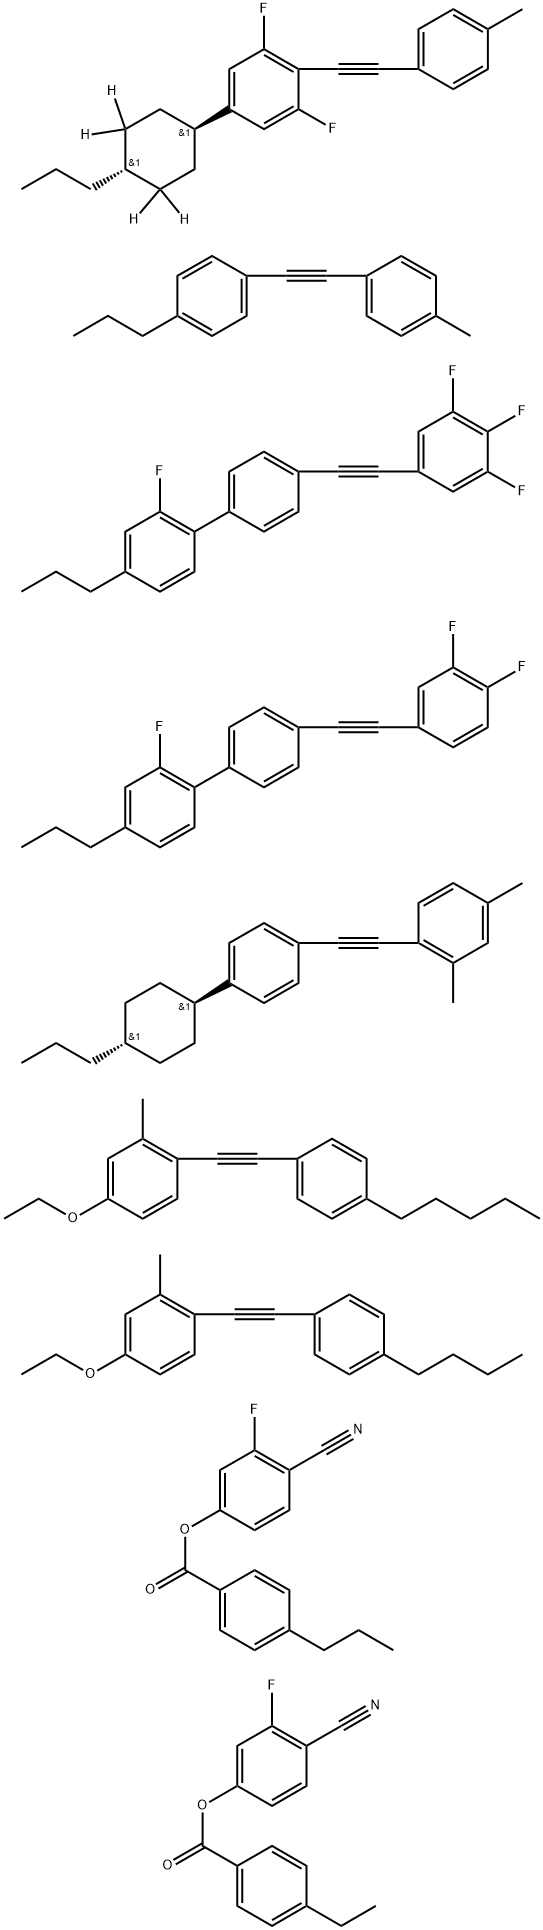 329769-13-3 Benzoic acid, 4-ethyl-, 4-cyano-3-fluorophenyl ester, mixt. with 1-[(4-butylphenyl)ethynyl]-4-ethoxy-2-methylbenzene, 4-cyano-3-fluorophenyl 4-propylbenzoate, 1,3-difluoro-2-[(4-methylphenyl)ethynyl]-5-(trans-4-propylcyclohexyl-3,3,5,5-d4)benzene, 4′-[(3,4-difluorophenyl)ethynyl]-2-fluoro-4-propyl-1,1′-biphenyl, 2,4-dimethyl-1-[[4-(trans-4-propylcyclohexyl)phenyl]ethynyl]benzene, 4-ethoxy-2-methyl-1-[(4-pentylphenyl)ethynyl]benzene, 2-fluoro-4-propyl-4′-[(3,4,5-trifluorophenyl)ethynyl]-1,1′-biphenyl and 1-[(4-methylphenyl)ethynyl]-4-propylbenzene